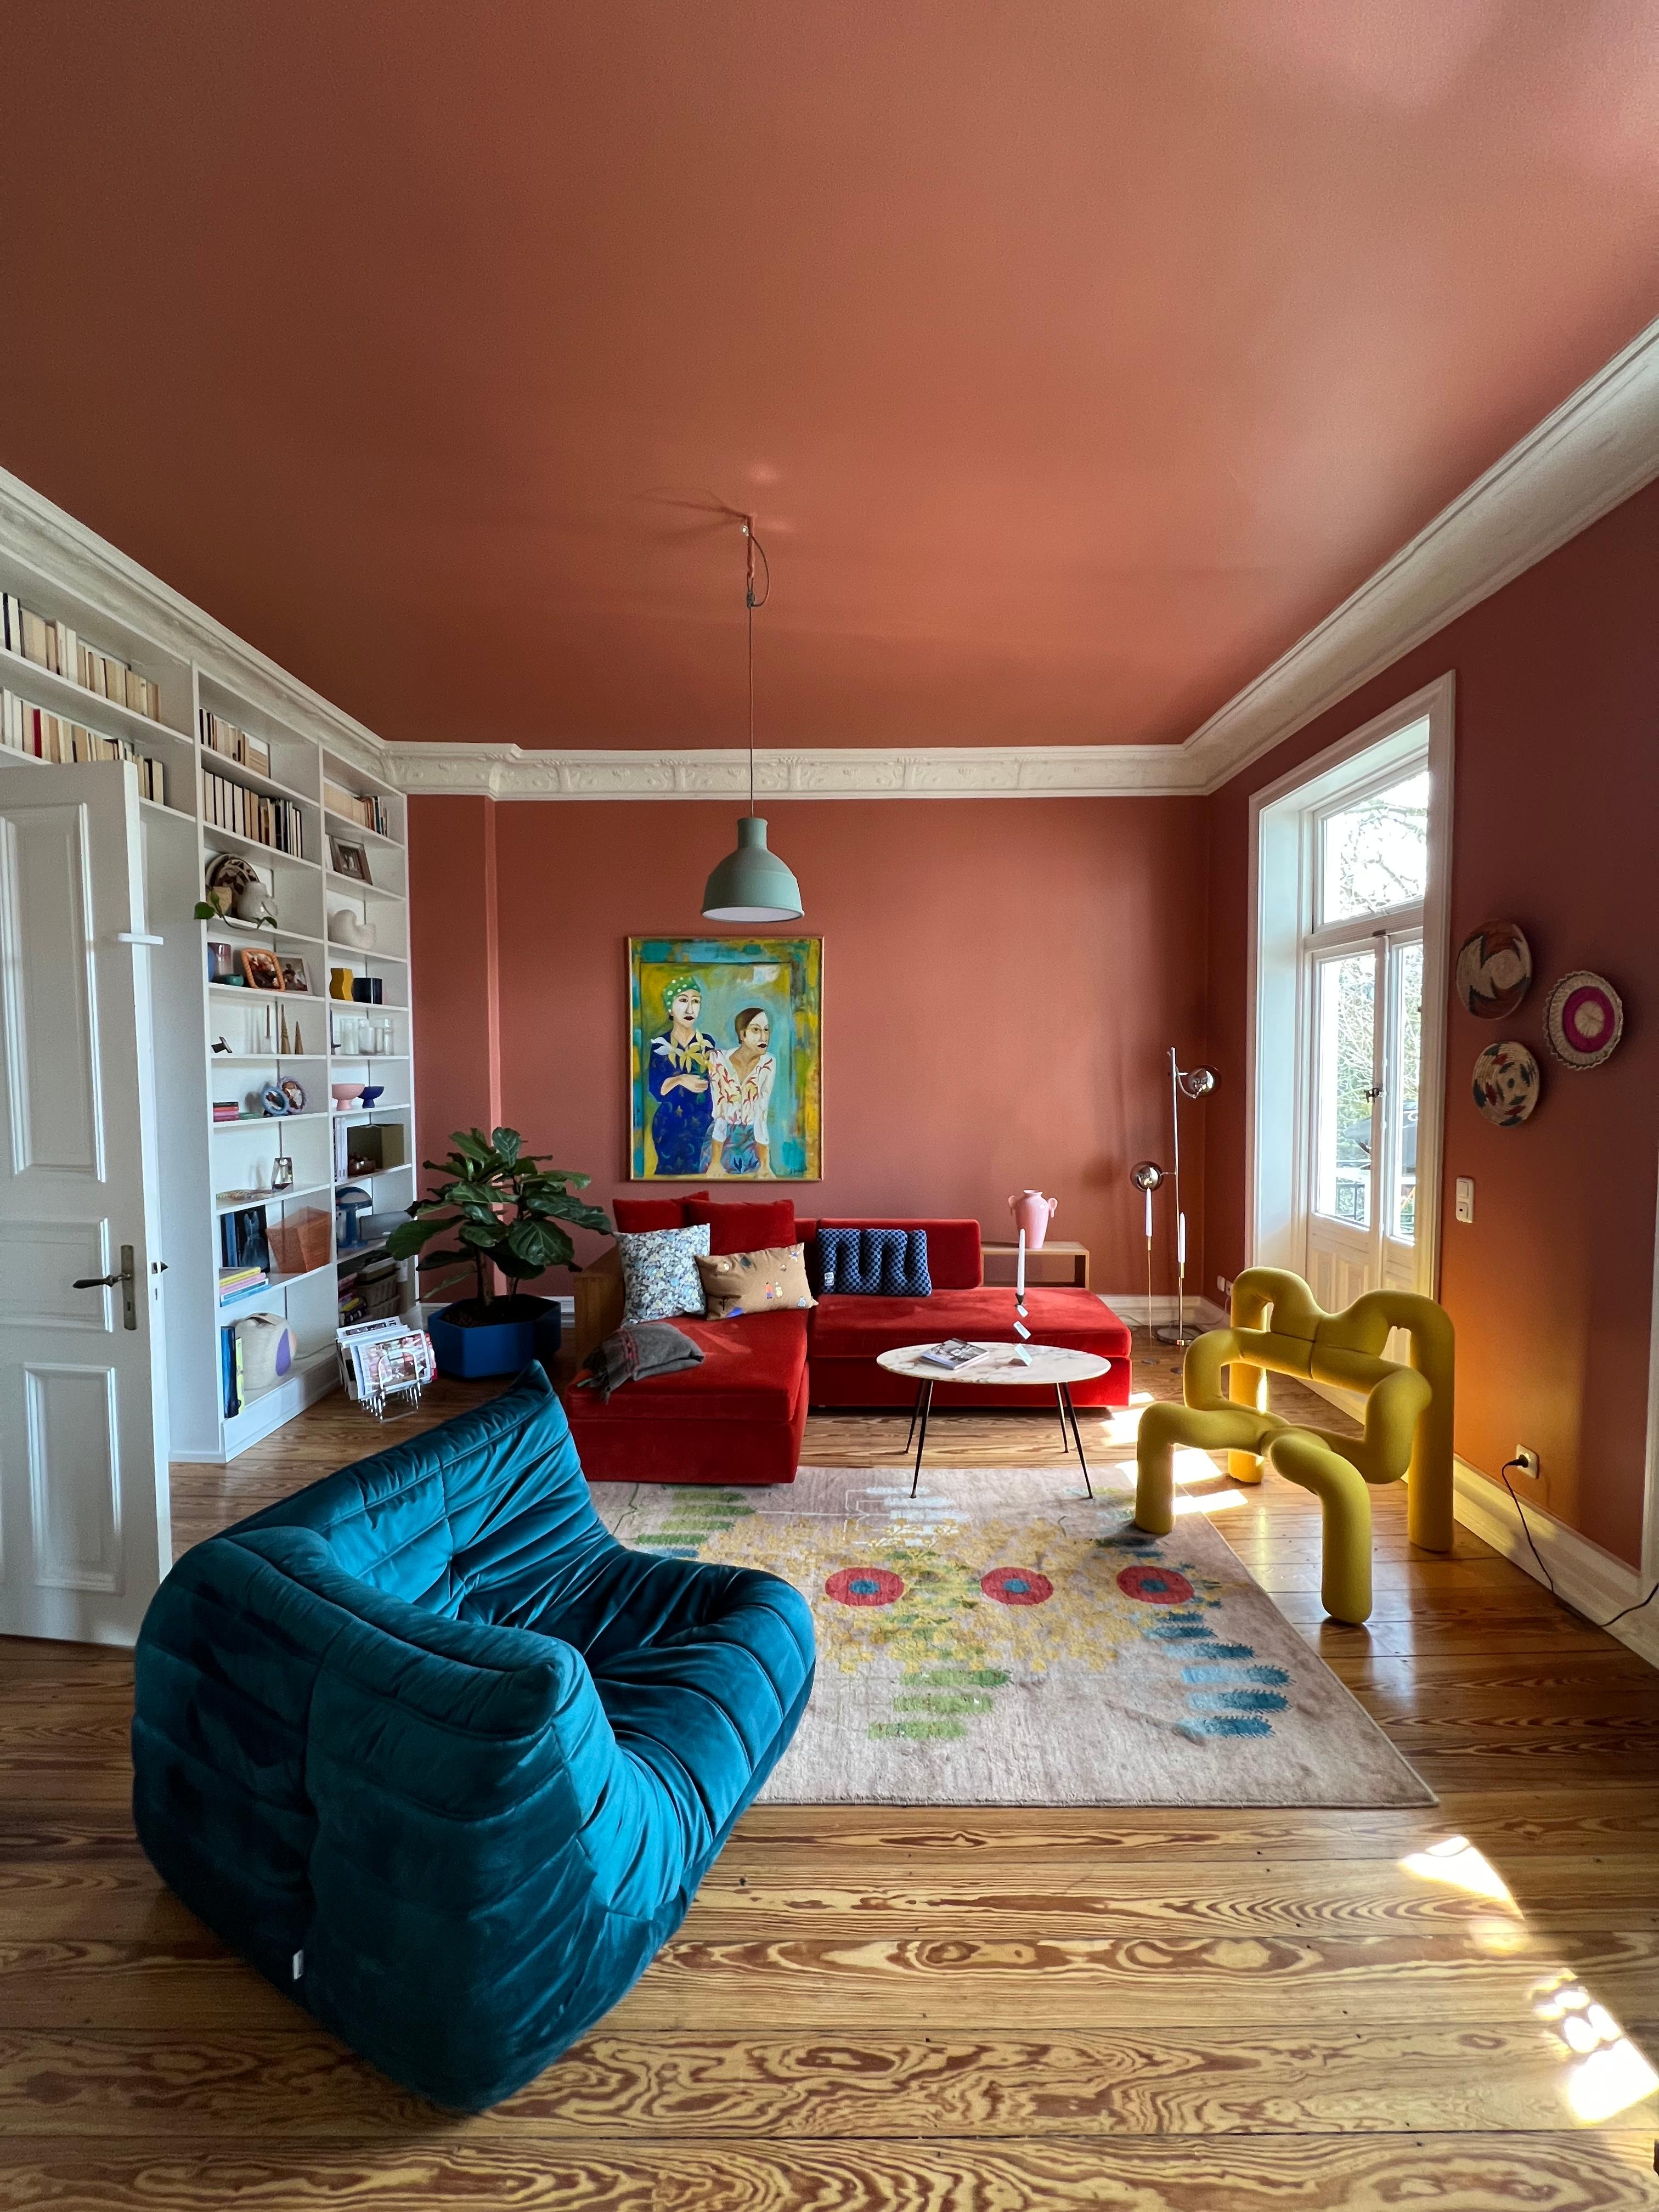 Farbenspiele.

#wohnzimmer #altbau #colorful #couchliebt #